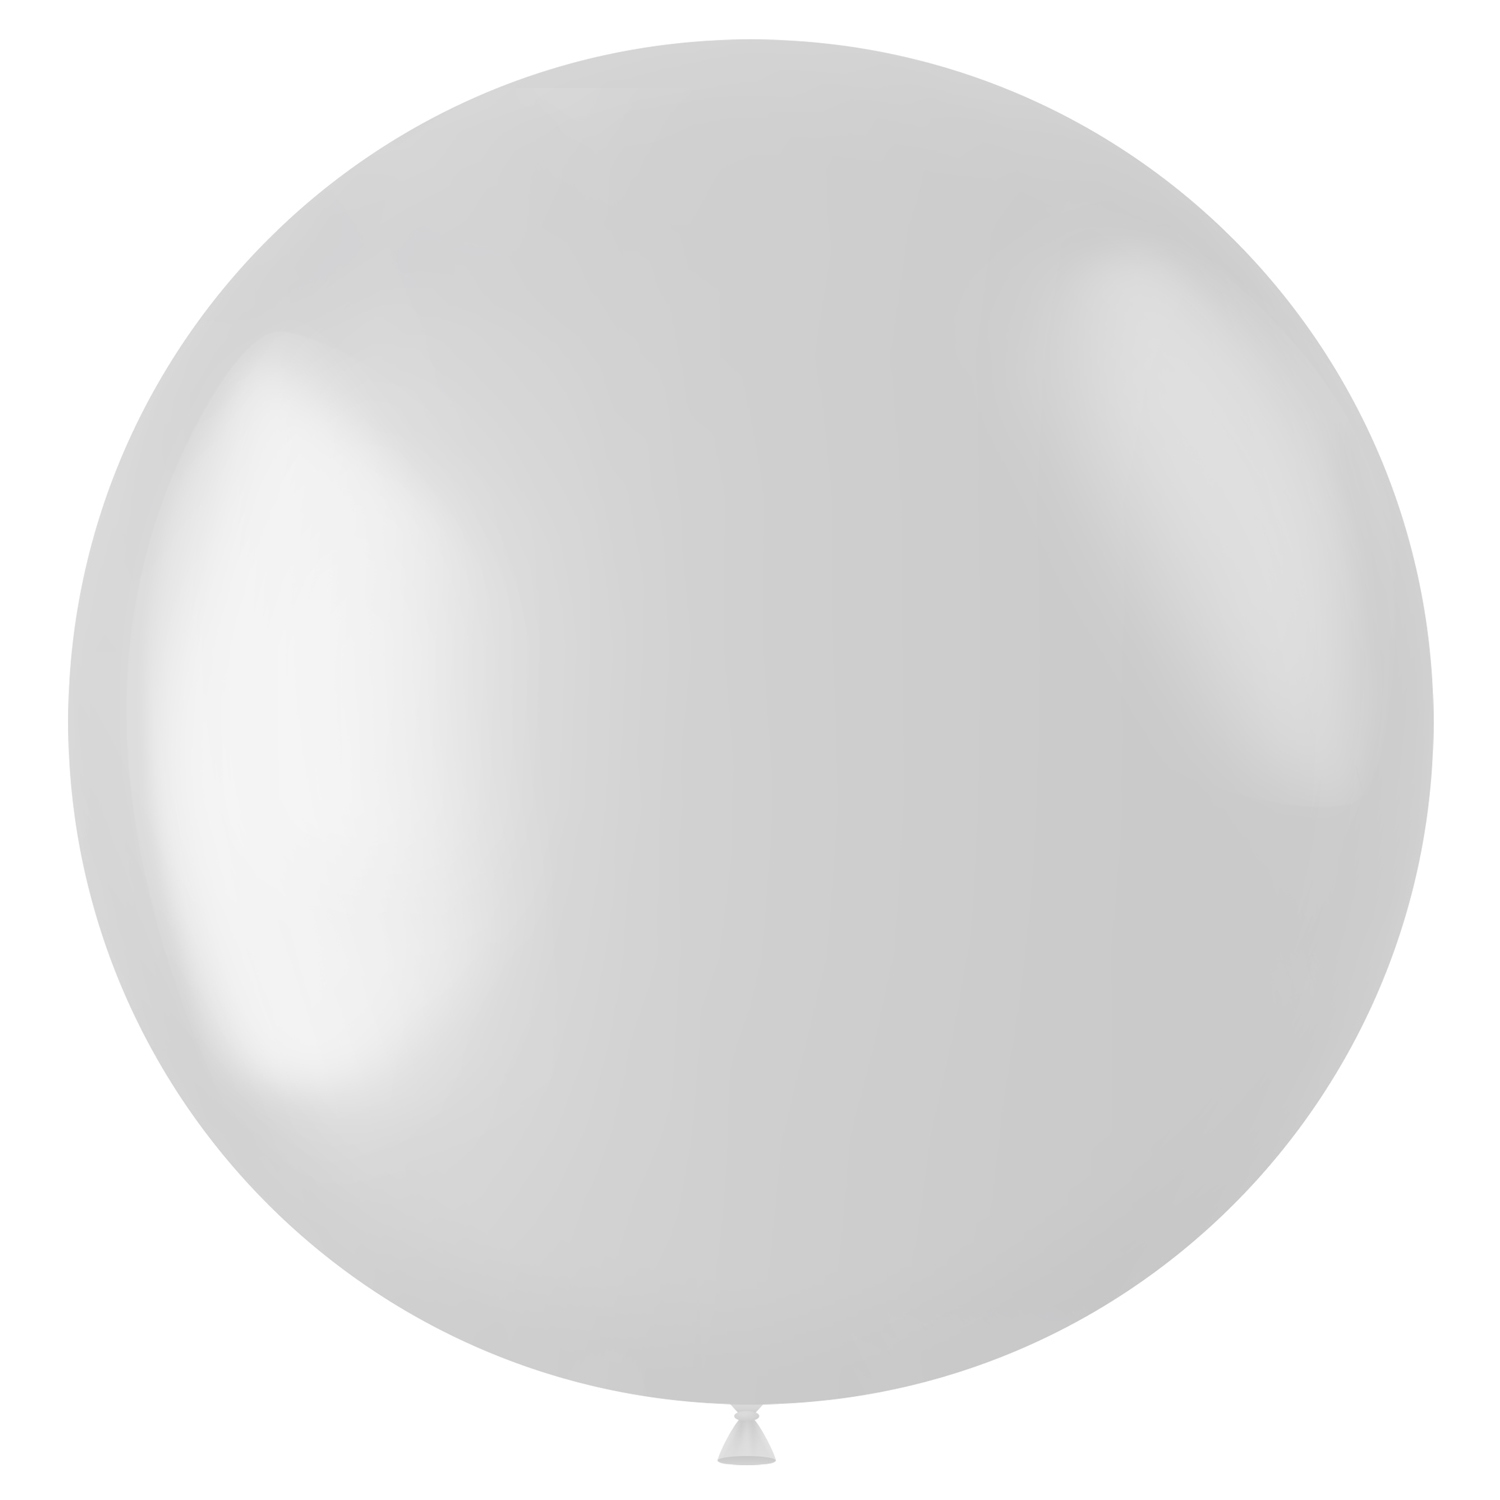 NEU Latex-Luftballon XXL matt, 80cm, weiß, Riesenballon